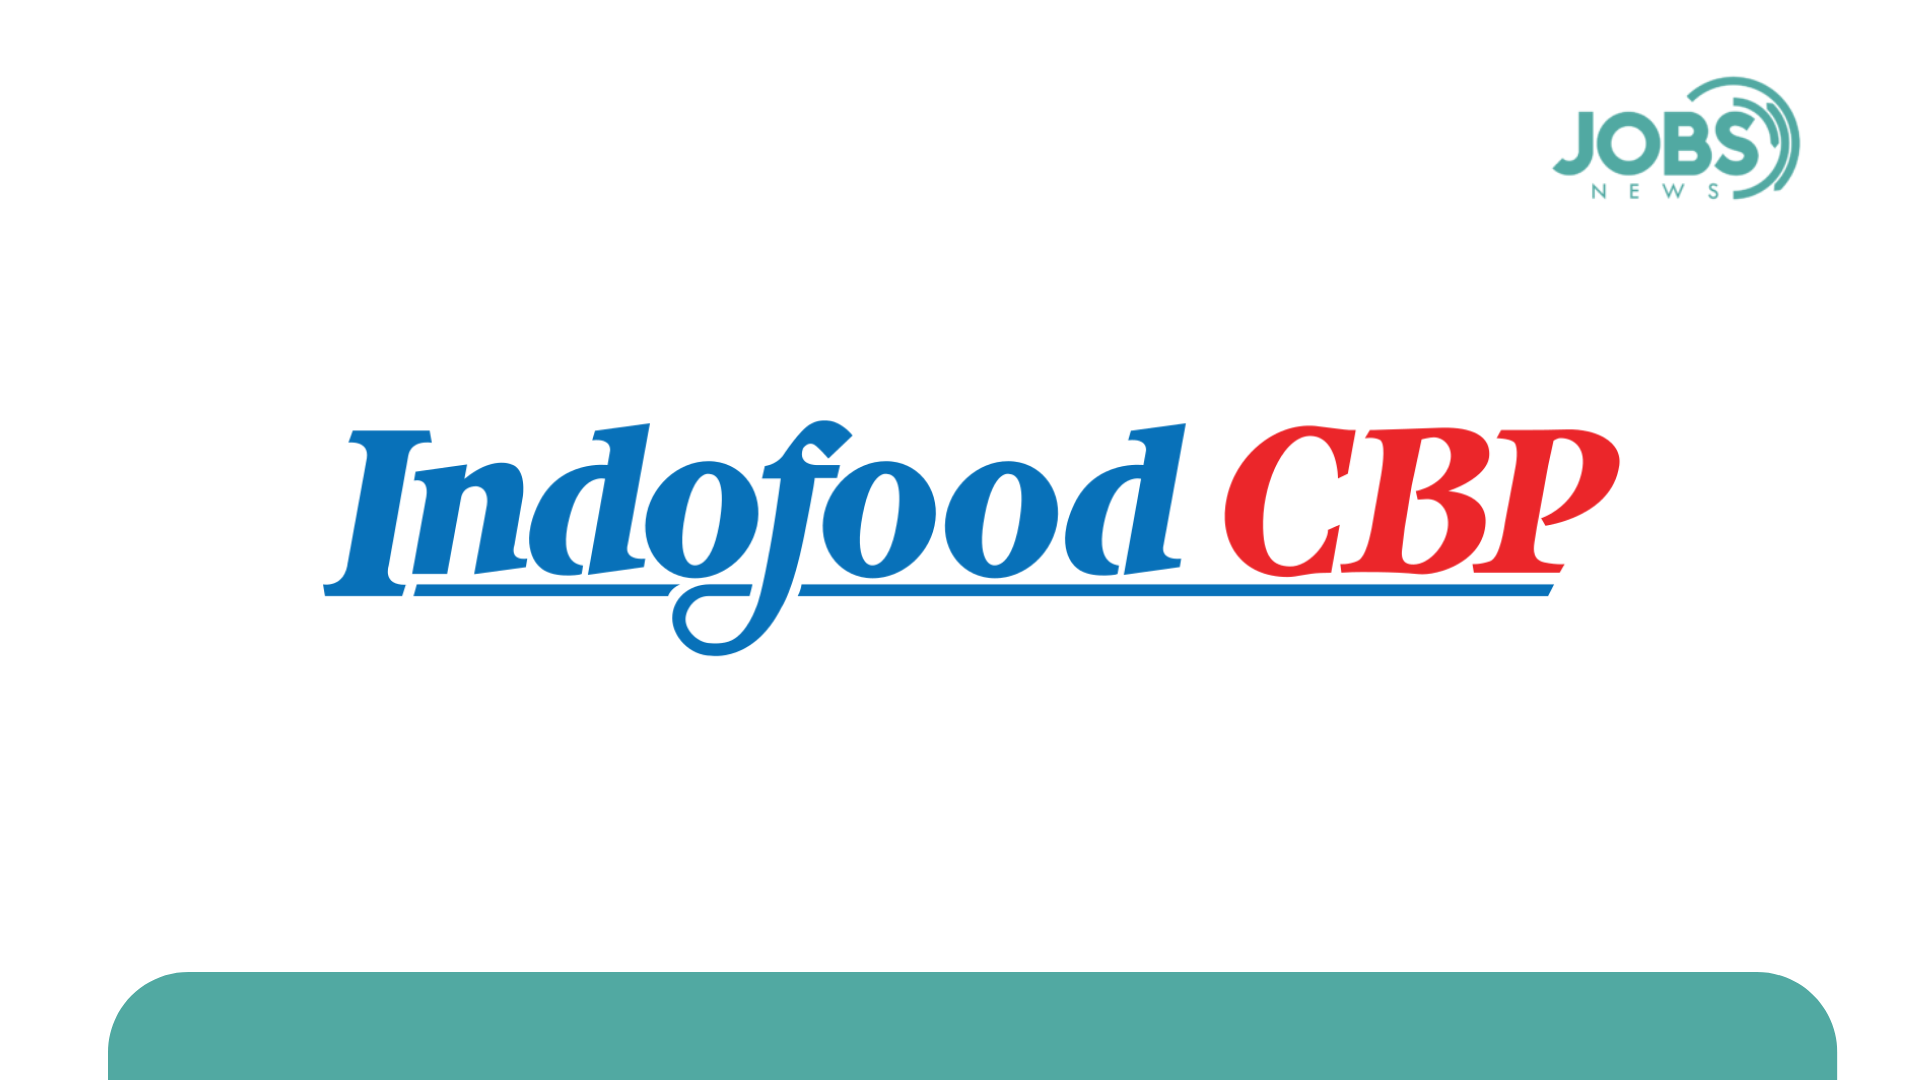 Lowongan Kerja PT Indofood CBP Sukses Makmur Tbk (Noodle Division)